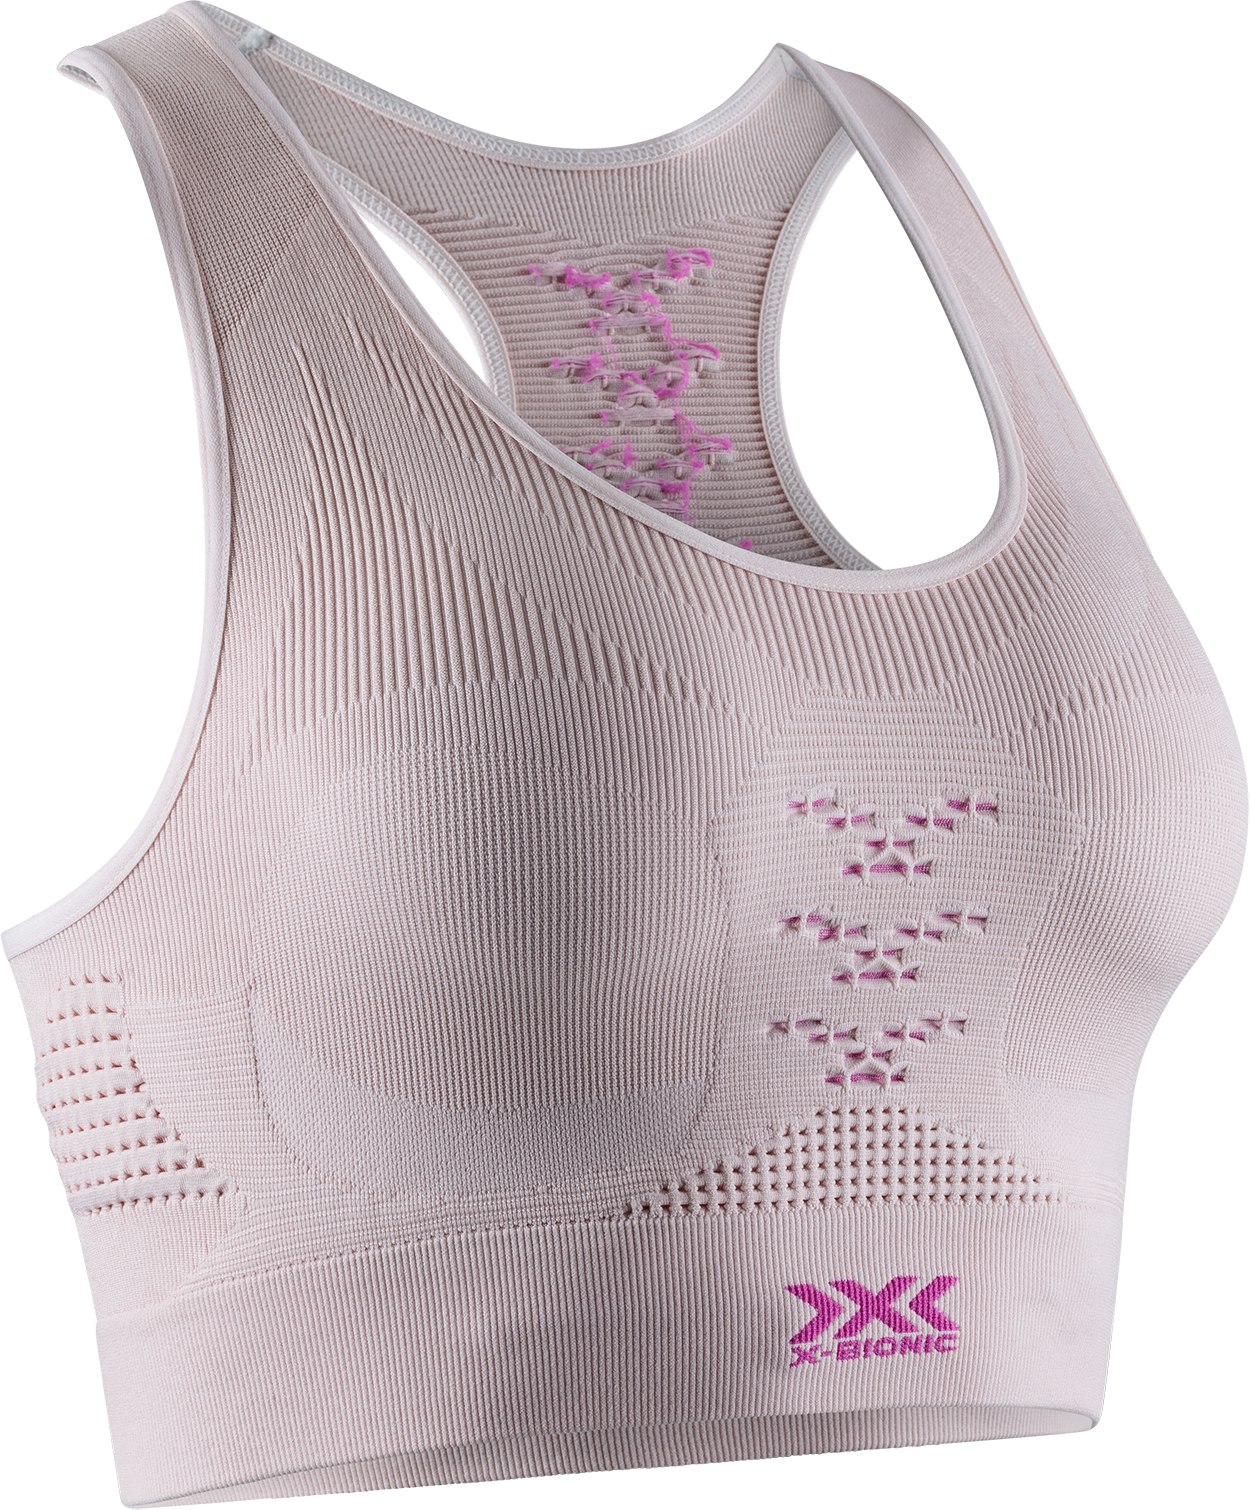 Produktbild von X-Bionic Energizer 4.0 Sport BH Damen - magnolia purple/fuchsia